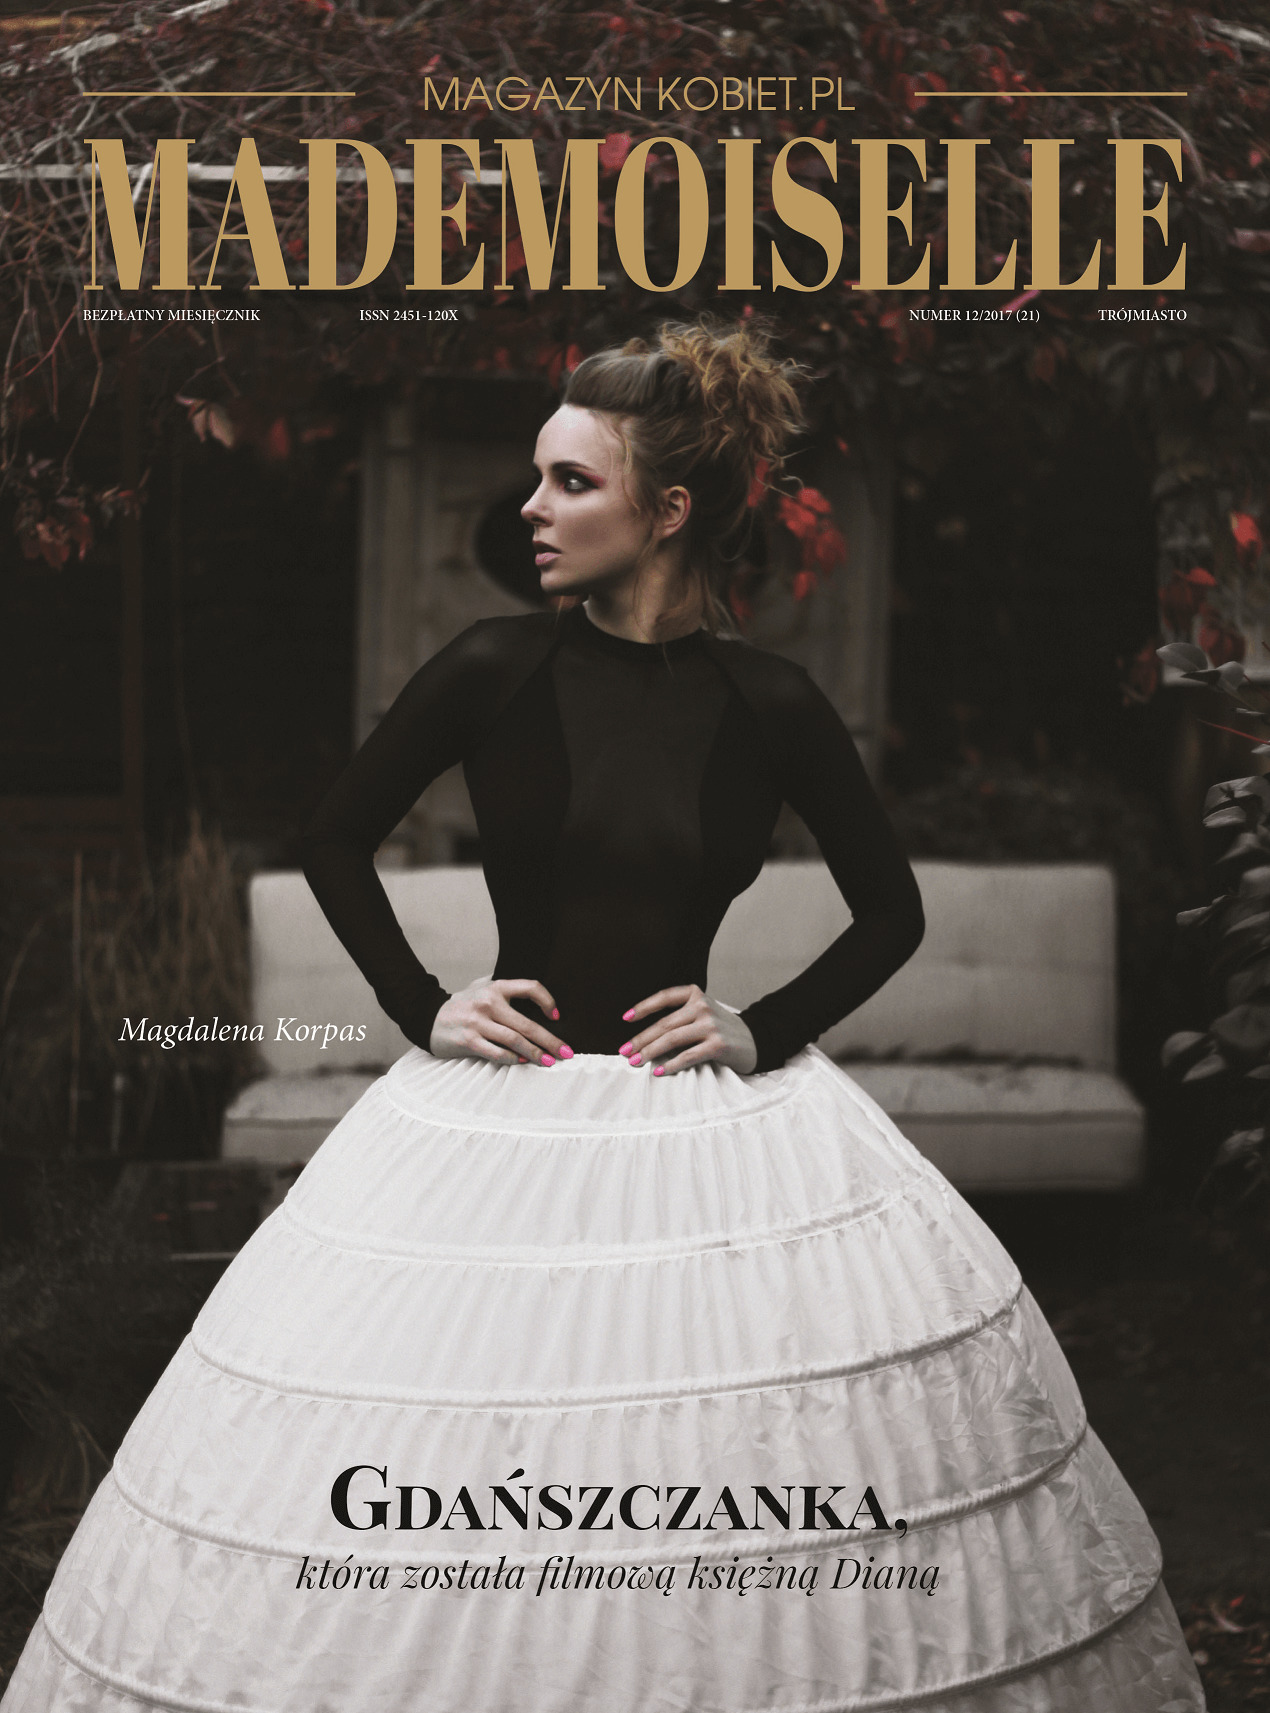 magazynkobiet.pl - mademoiselle okladka DUZE 1 - Archiwum czasopism